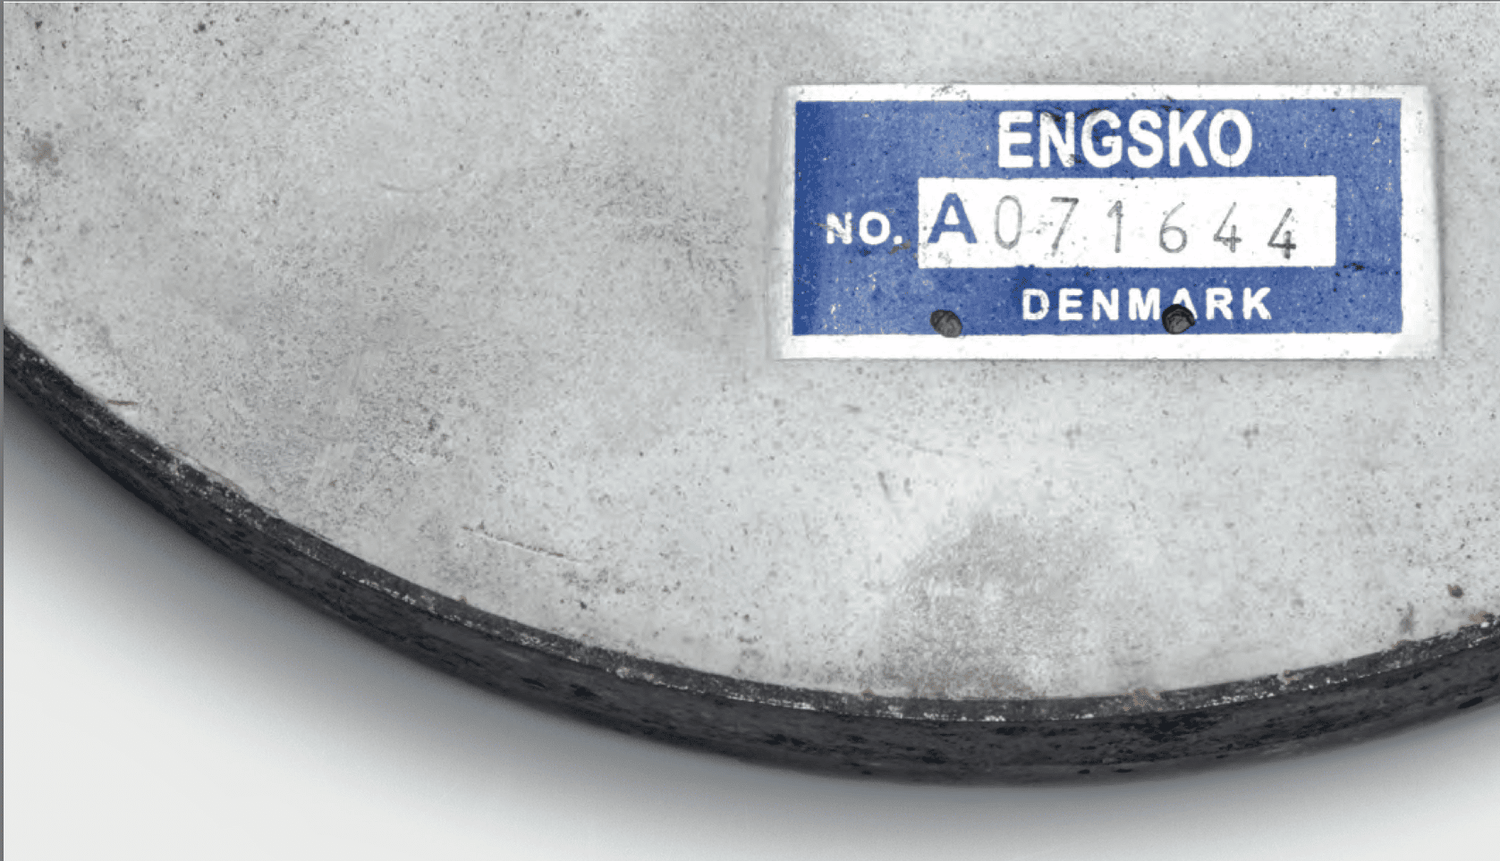 millstone from Engsko Milling Systems, Denmark